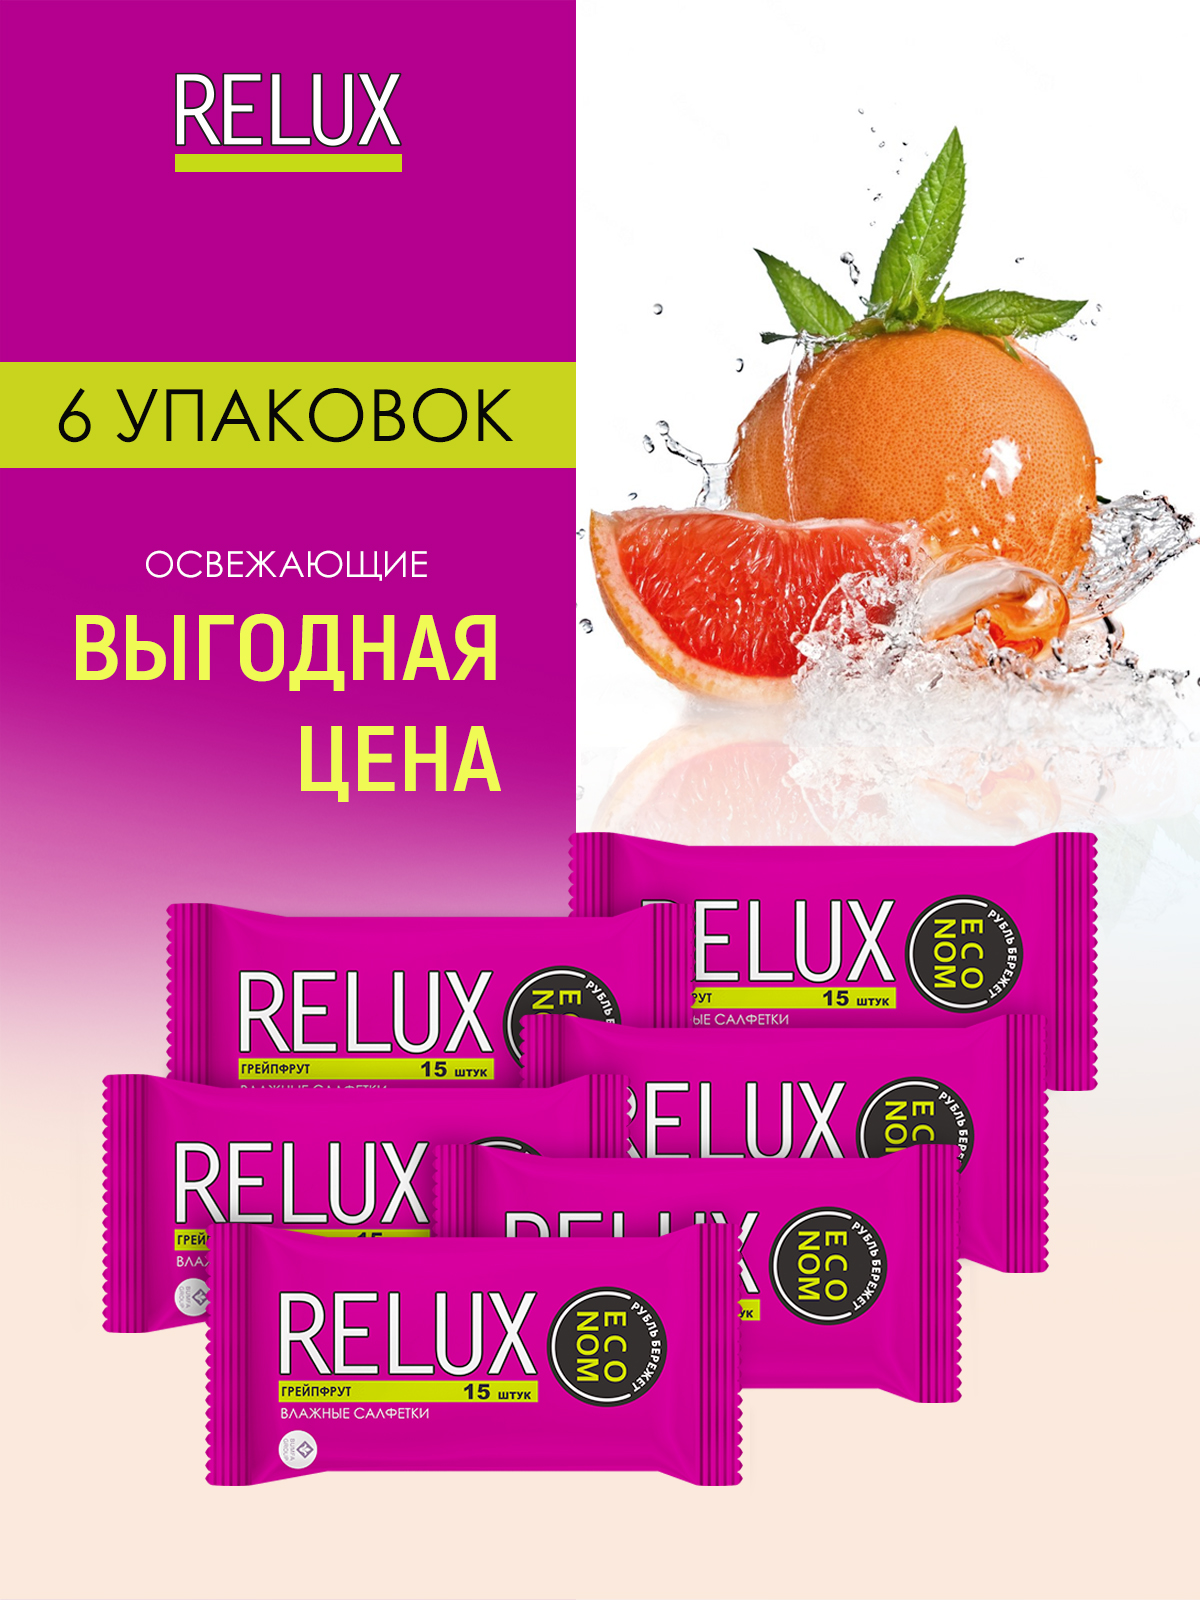 Салфетки влажные Relux освежающие грейпфрут 15шт 6 упаковок relux салфетки влажные освежающие киви 15 0